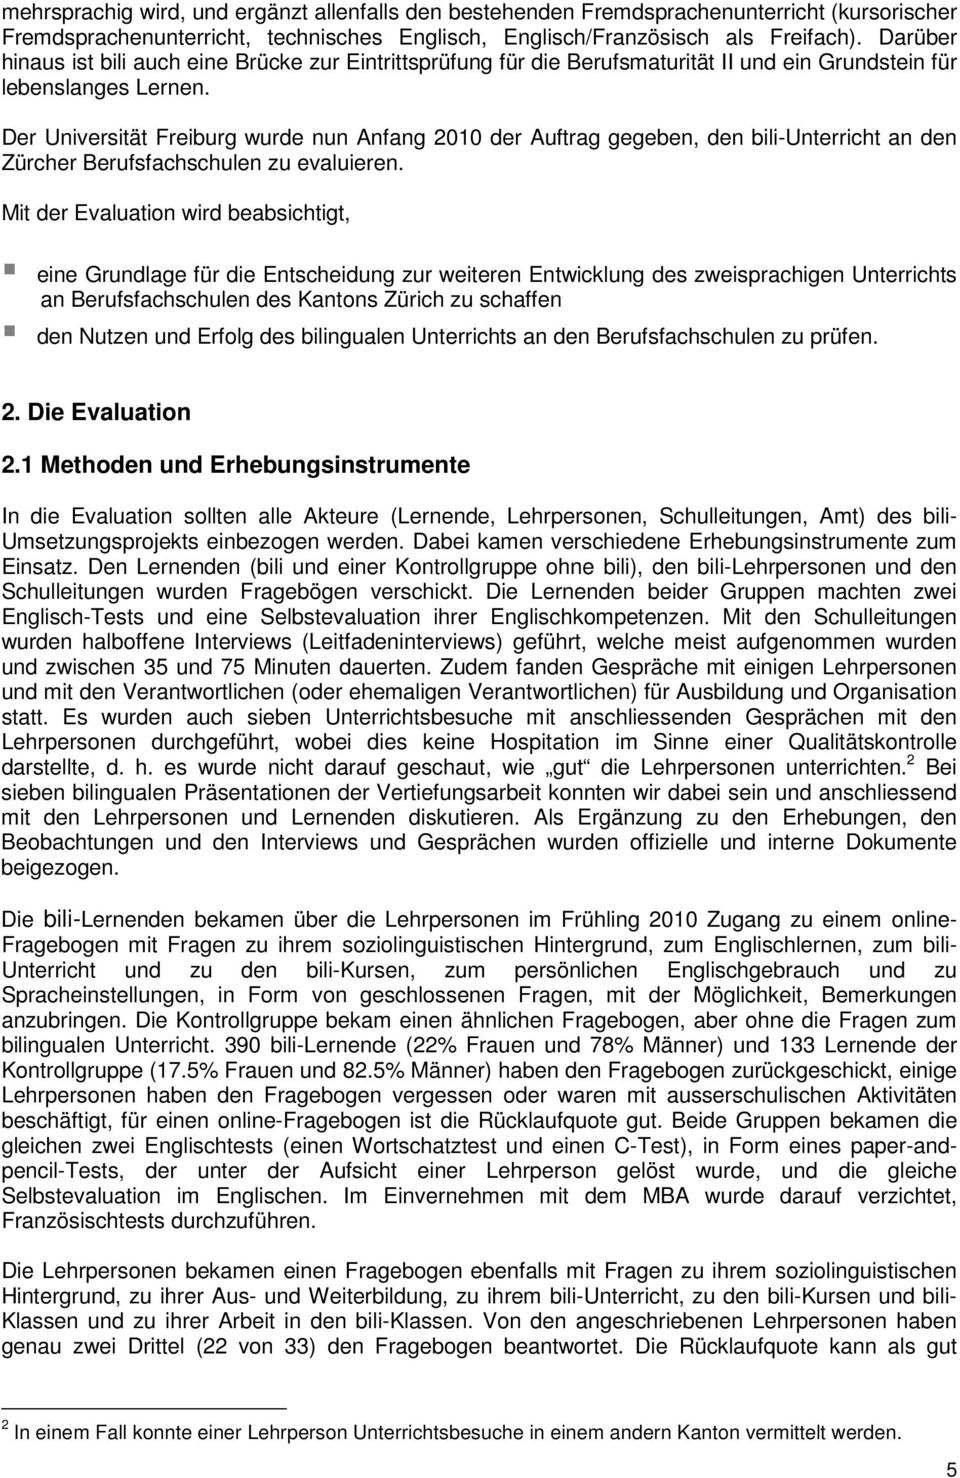 Der Universität Freiburg wurde nun Anfang 2010 der Auftrag gegeben, den bili-unterricht an den Zürcher Berufsfachschulen zu evaluieren.